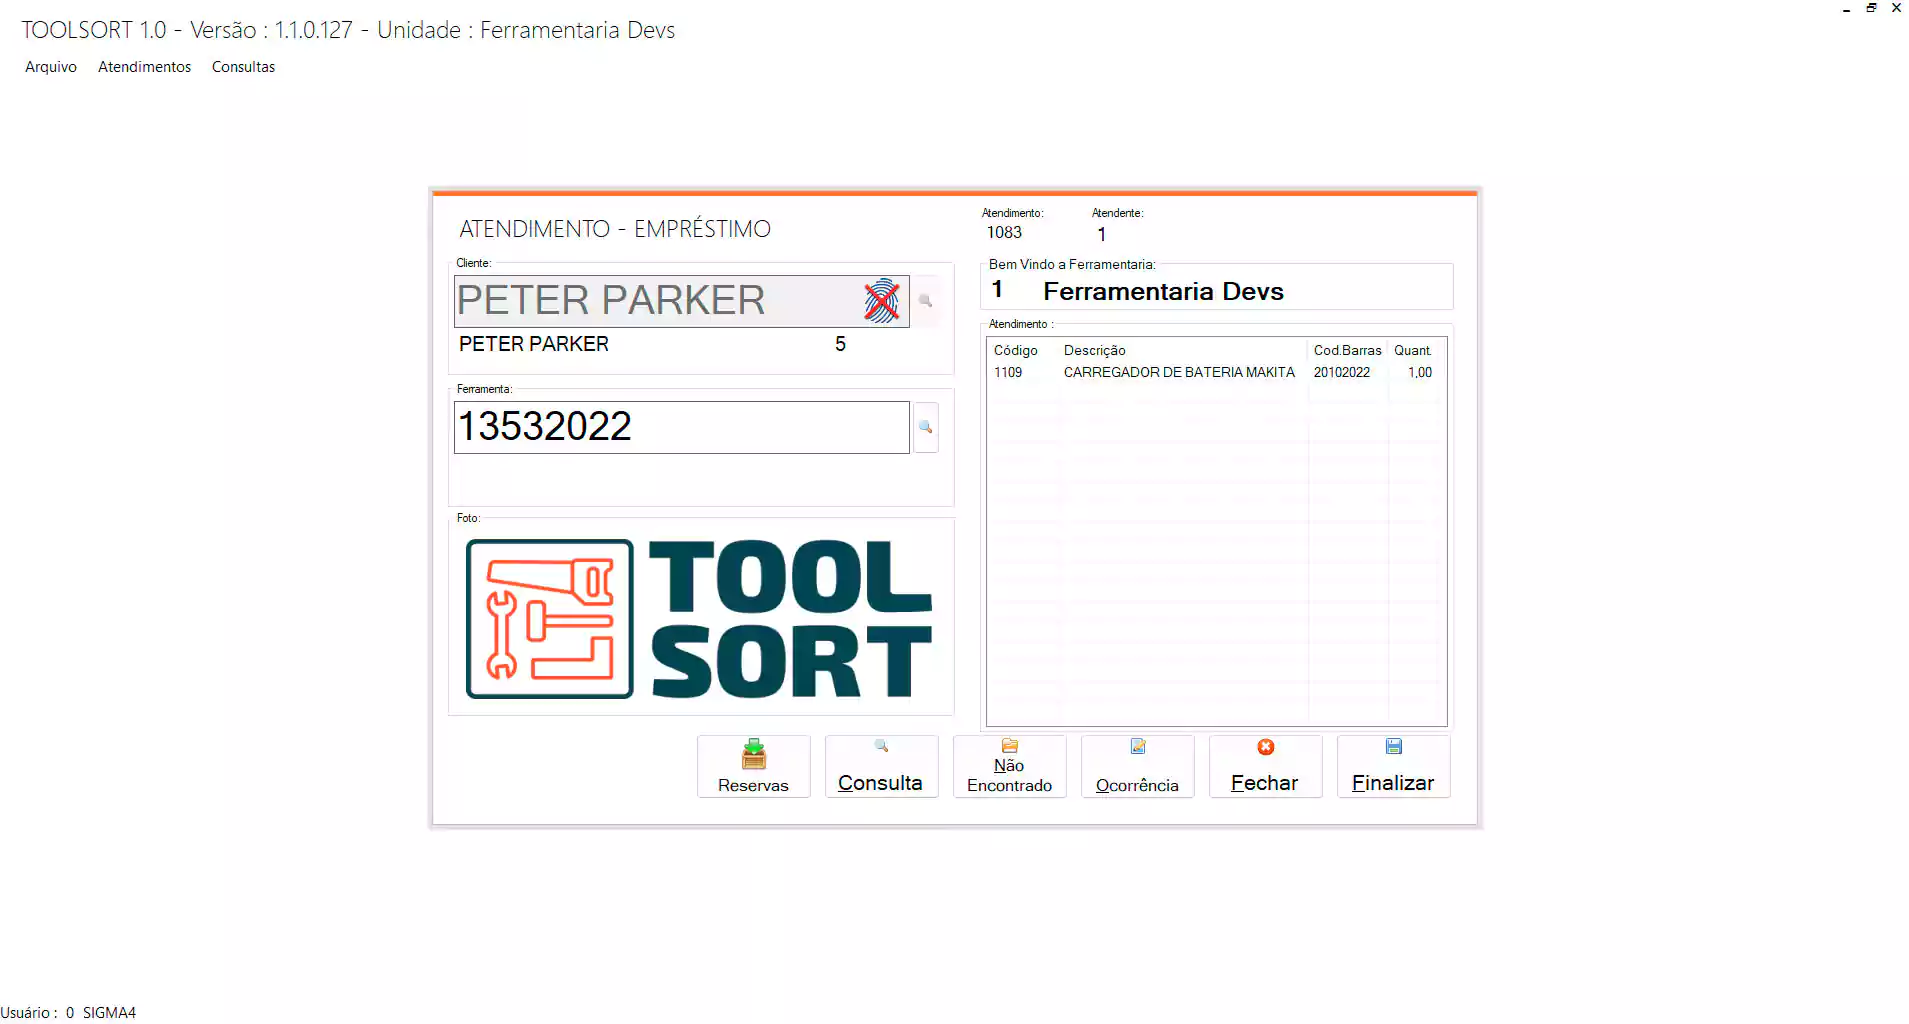 gestão de ferramentas, Tool Management